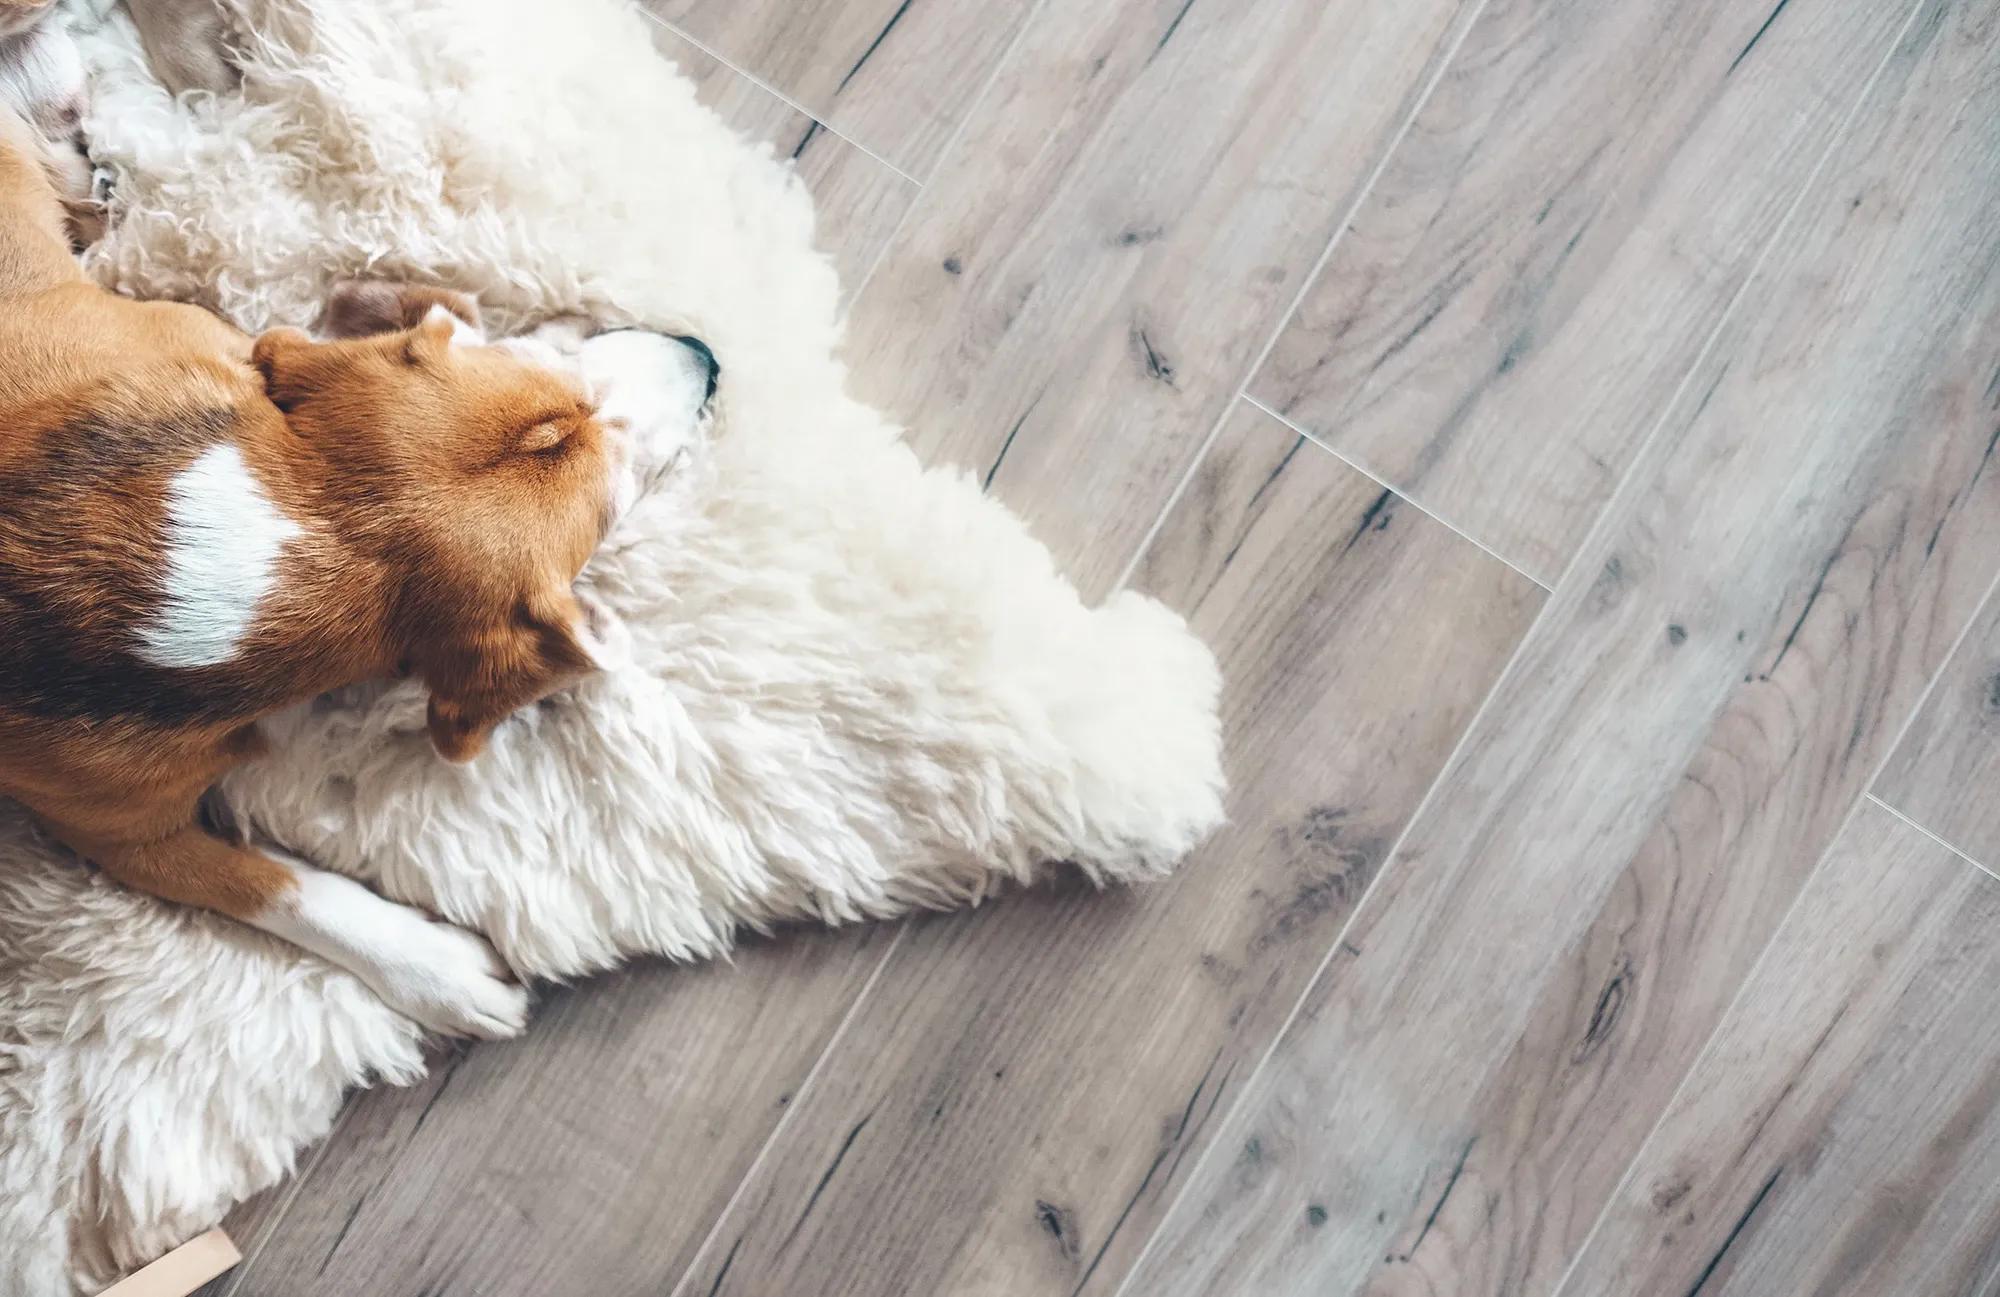 Komfortabel värme från golvvärme - Hund sover och njuter av behaglig värme på golvet. Effektiv och diskret golvvärmeinstallation för ditt hem.